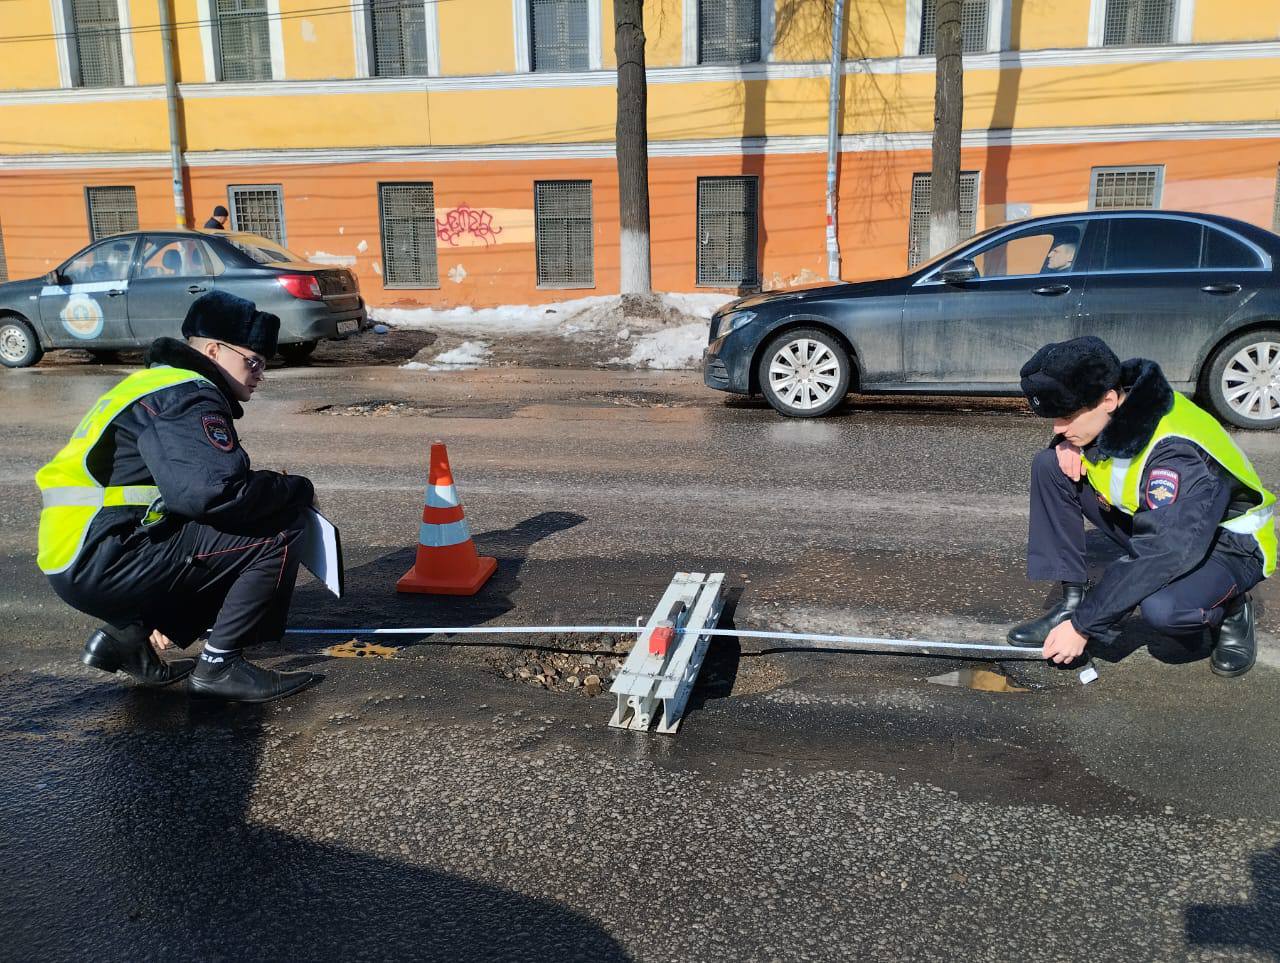 Сотрудники Госавтоинспекции в ходе повседневного надзора осуществляют контроль за состоянием улично-дорожной сети города Ярославля